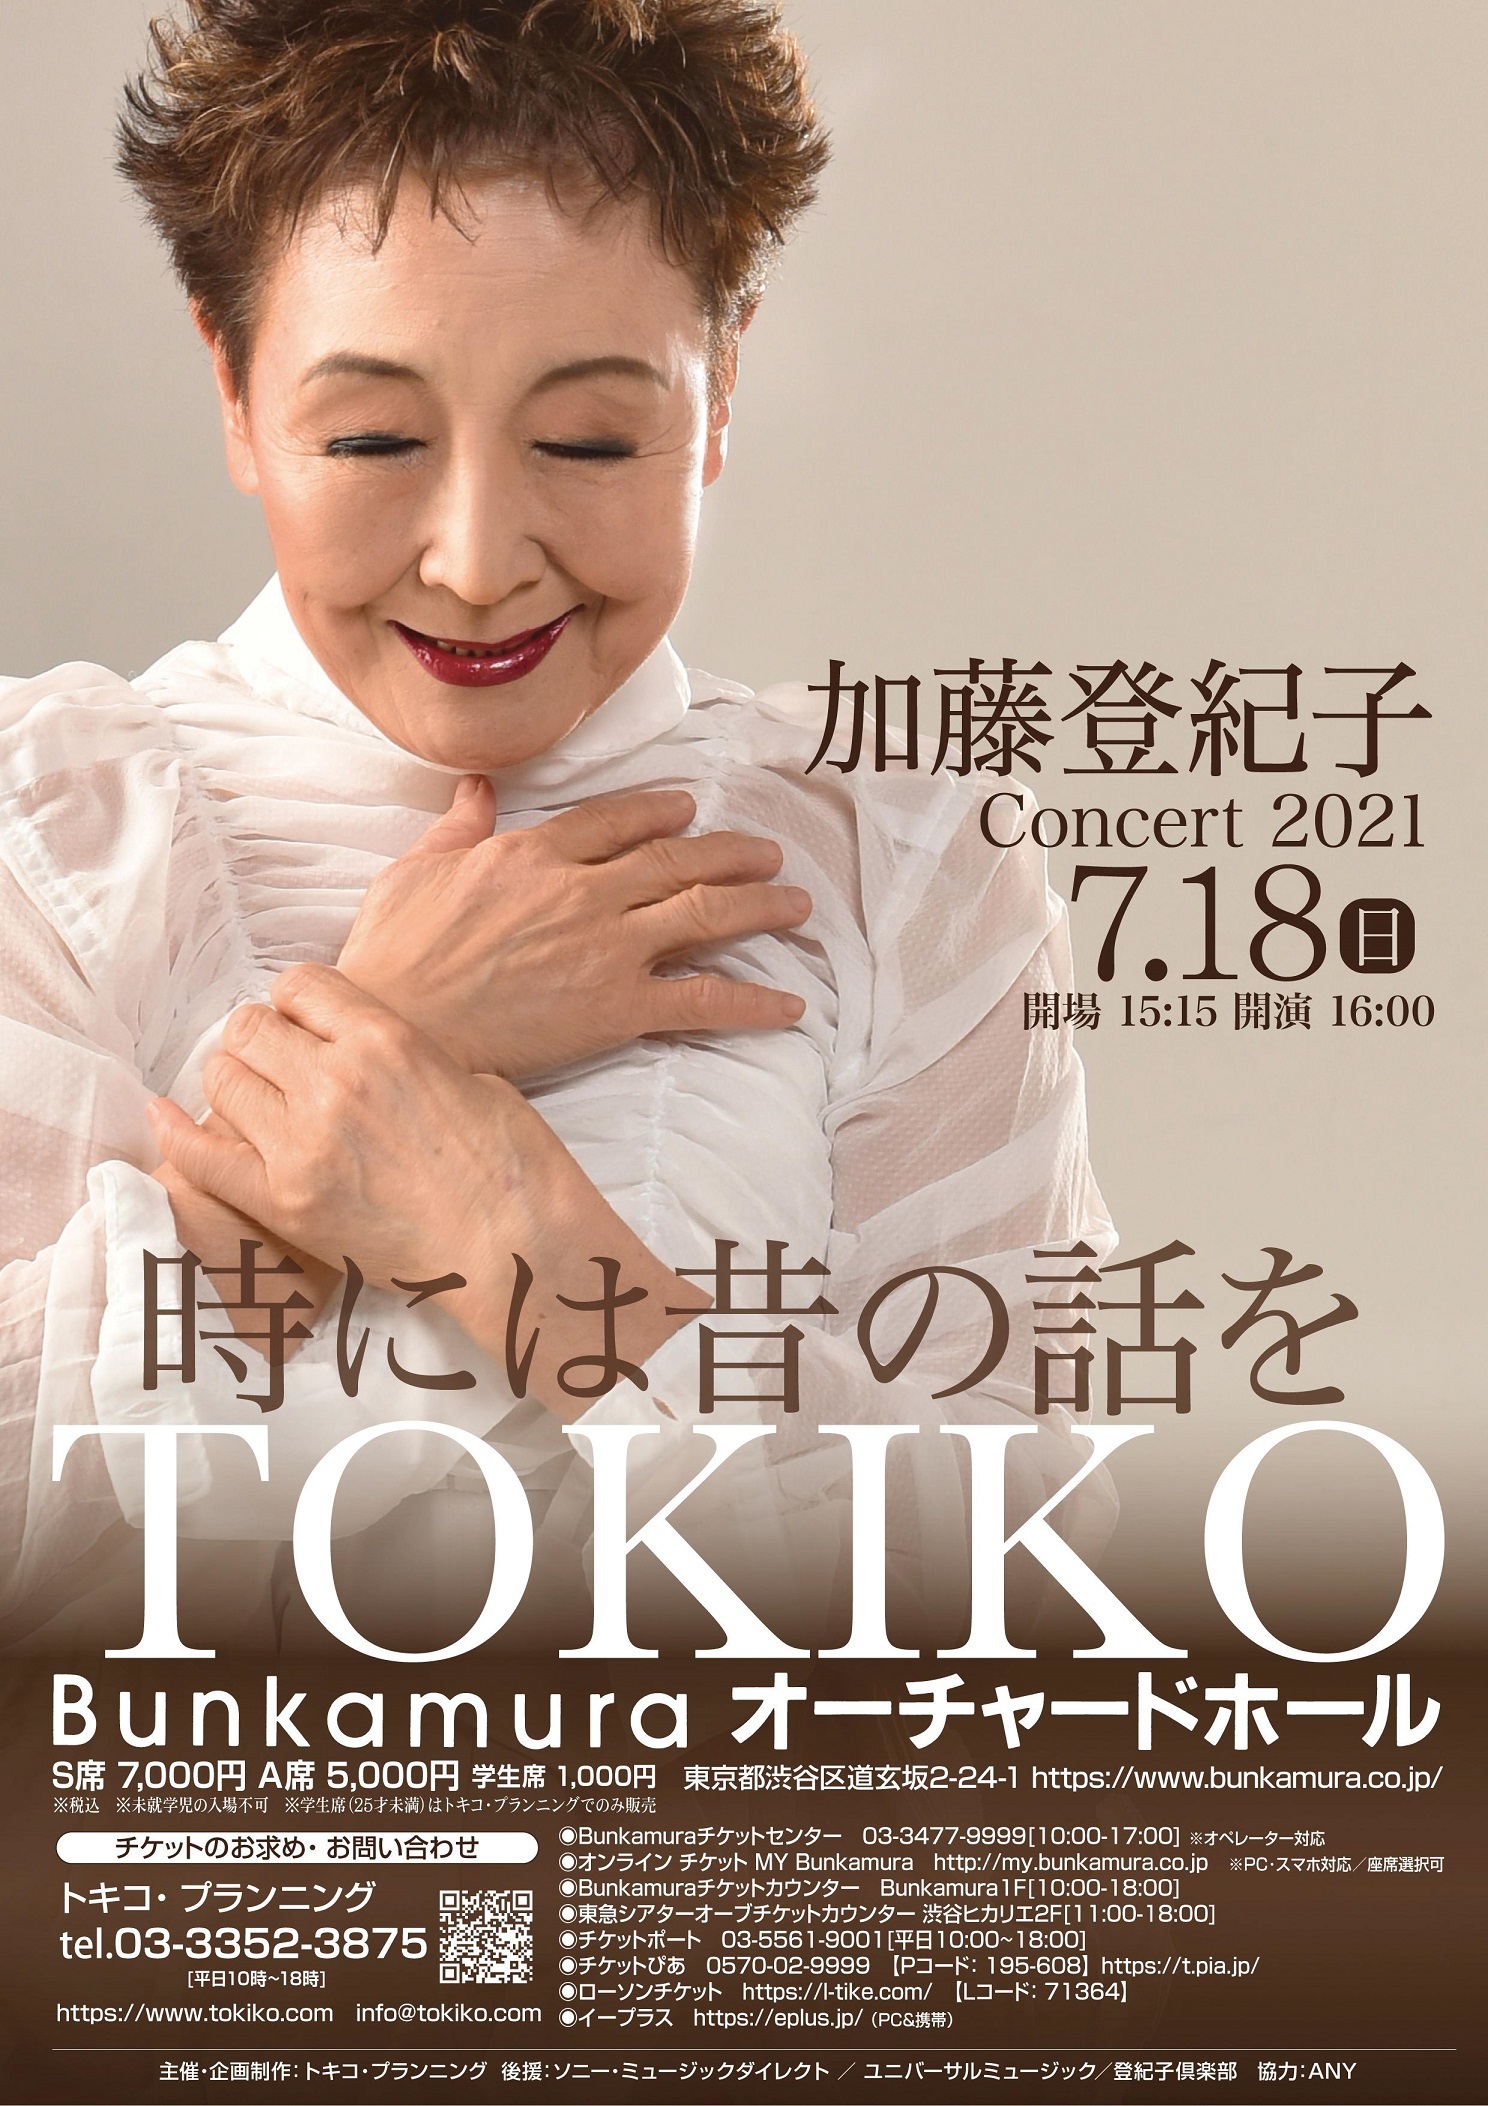 加藤登紀子がジブリソングを歌う 有観客コンサートをbunkamuraオーチャードホールで開催 Spice エンタメ特化型情報メディア スパイス